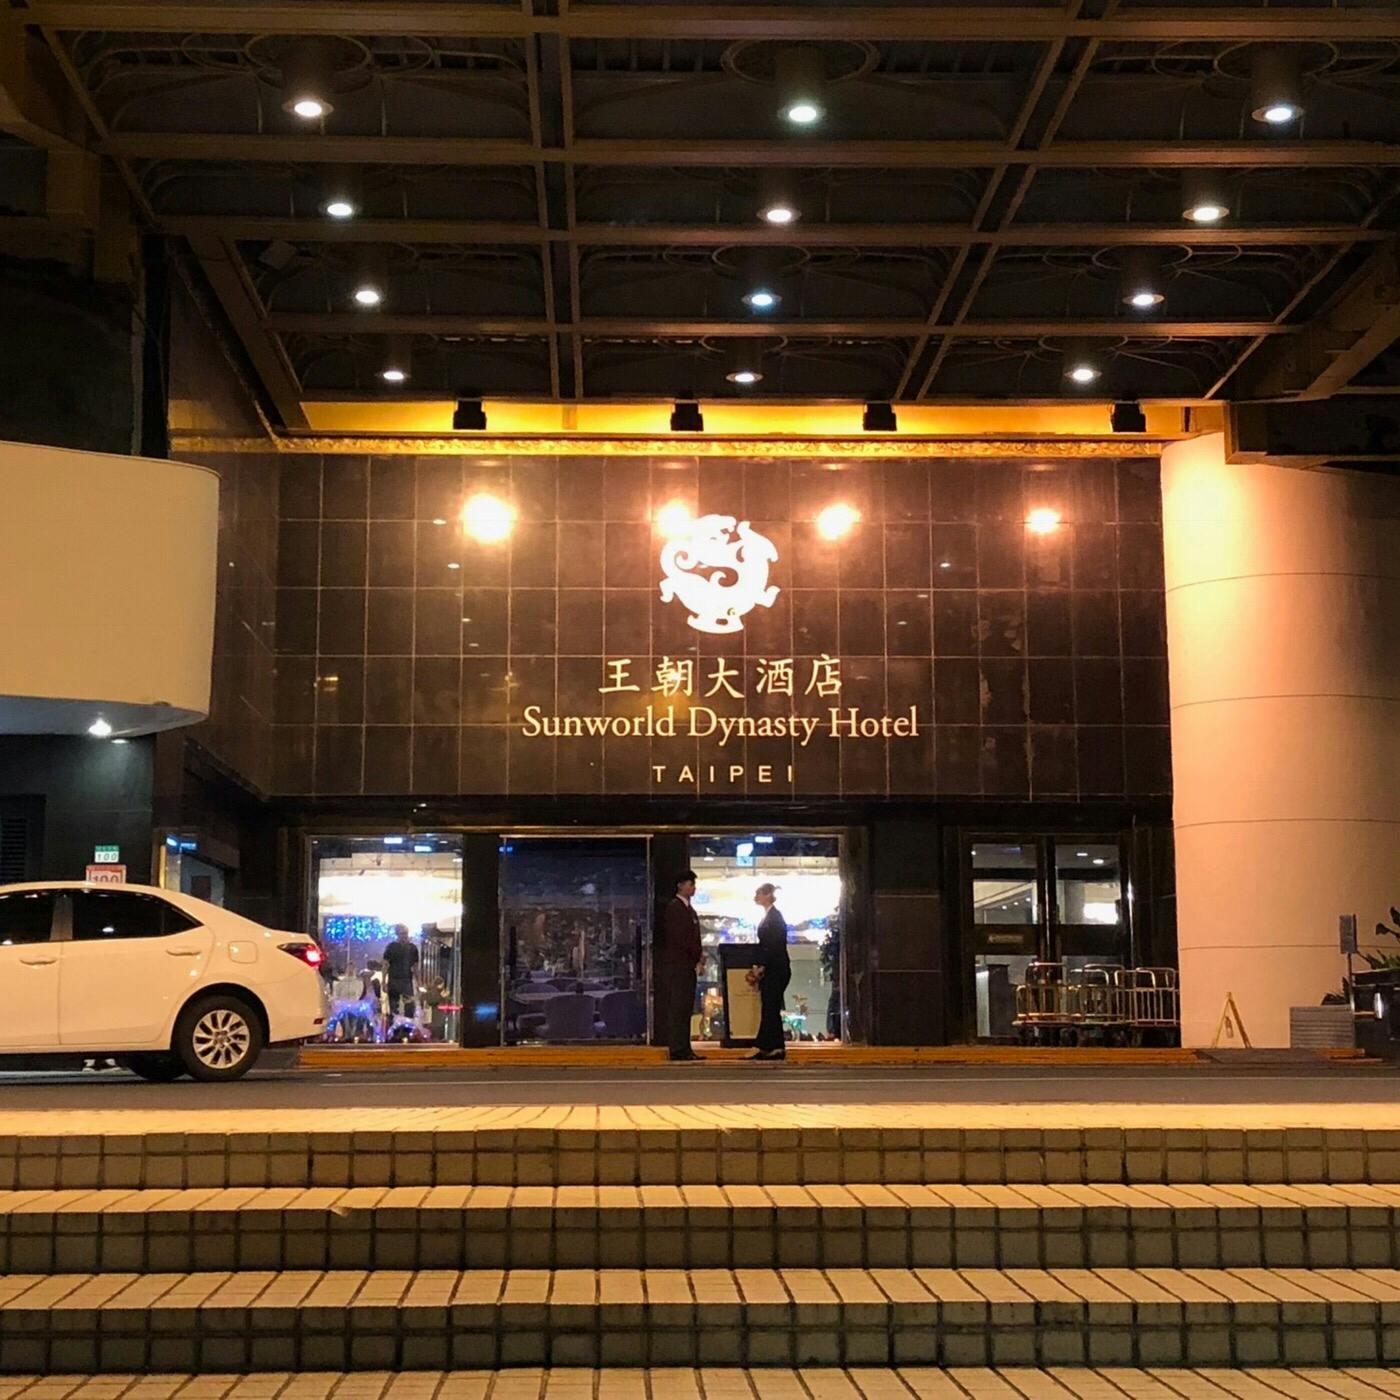 サン ワールド ダイナスティ ホテル 台北 台北王朝大酒店 Sunworld Dynasty Hotel Taipei の投稿写真 感想 みどころ 宿泊者だけですが台北101カウントダウン花火を屋上から見せて トリップノート